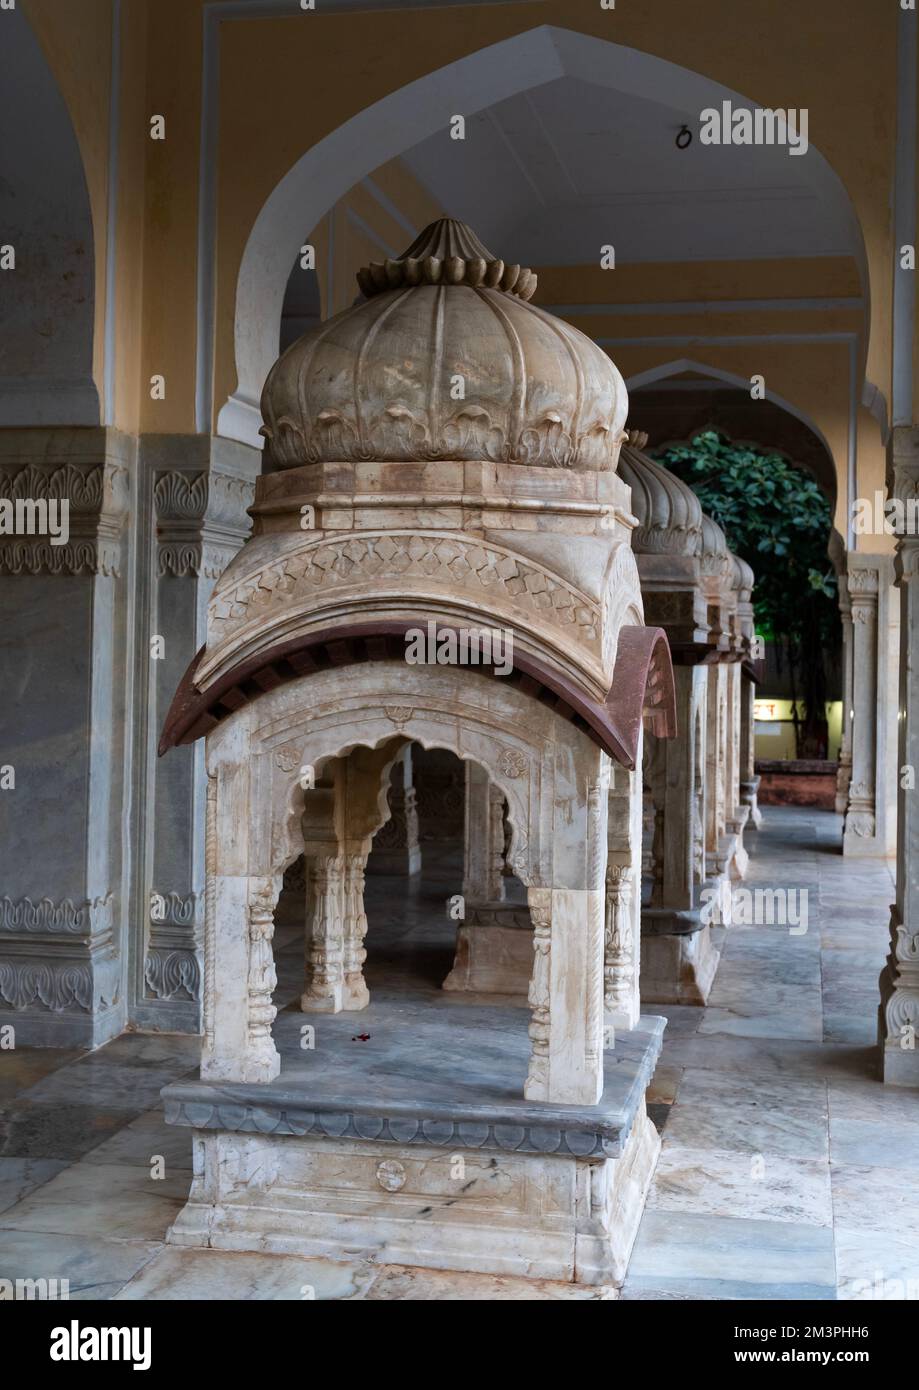 Gaitore Ki Chhatriyan cenotaph, Rajasthan, Jaipur, India Stock Photo